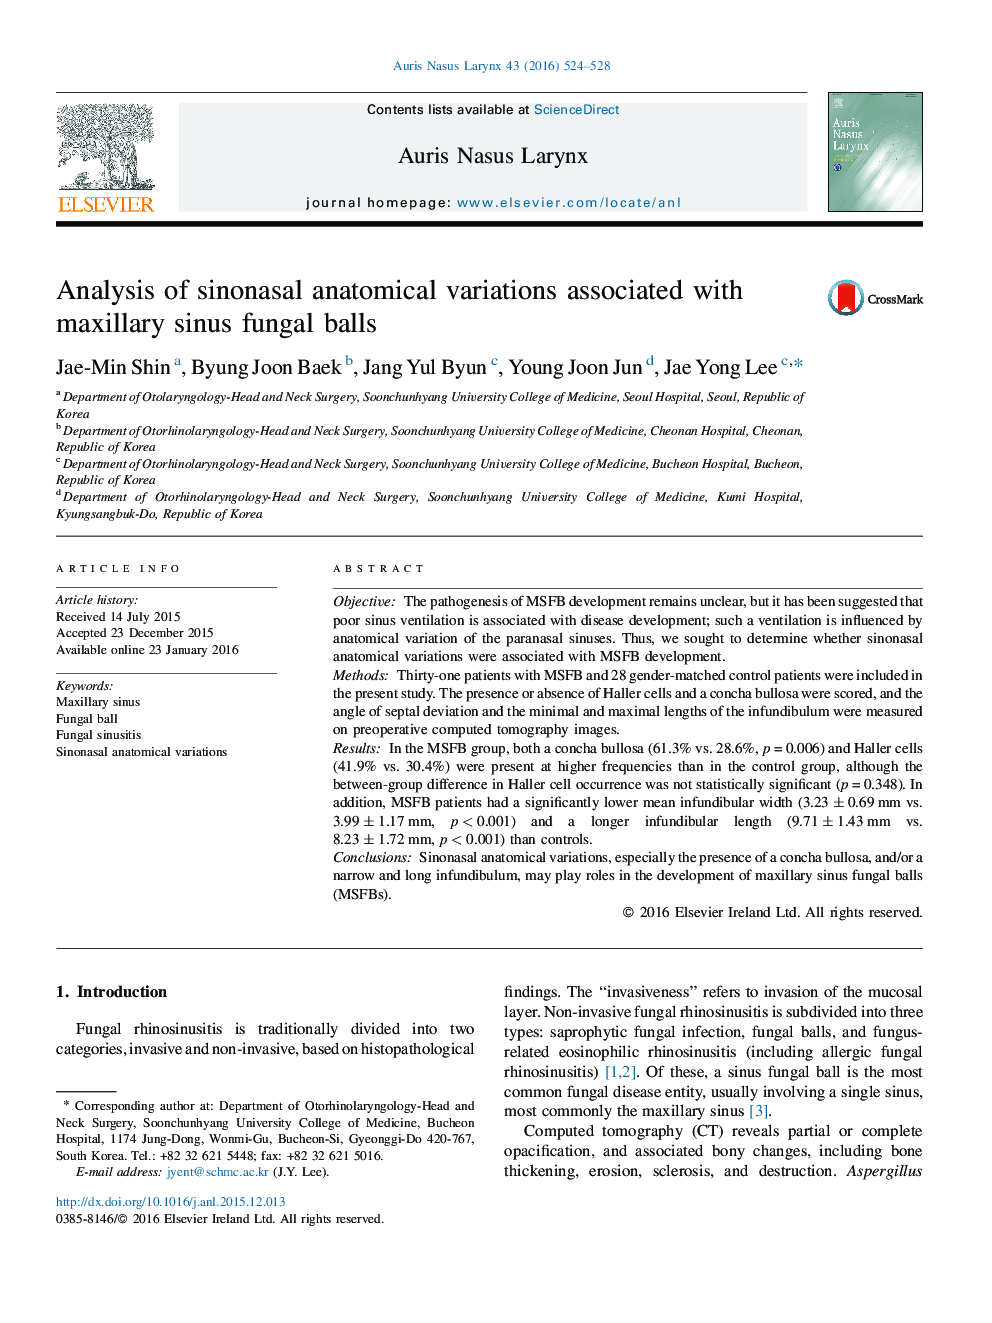 تجزیه و تحلیل تغییرات آناتومیک سینوسونال در ارتباط با توپ های قارچی سوزنی ماگزیلاری 